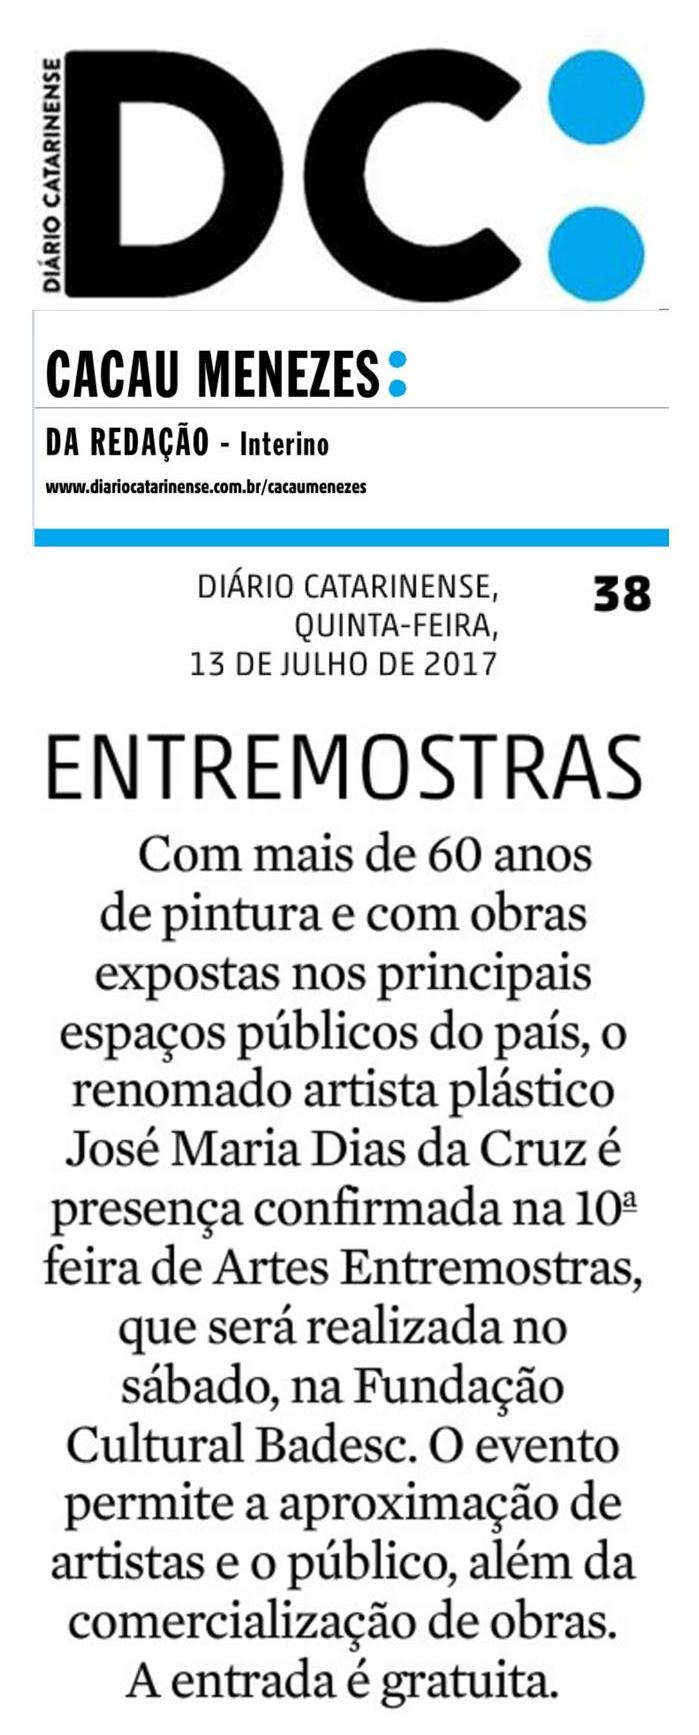 13.07 Entremostras Diário Catarinense